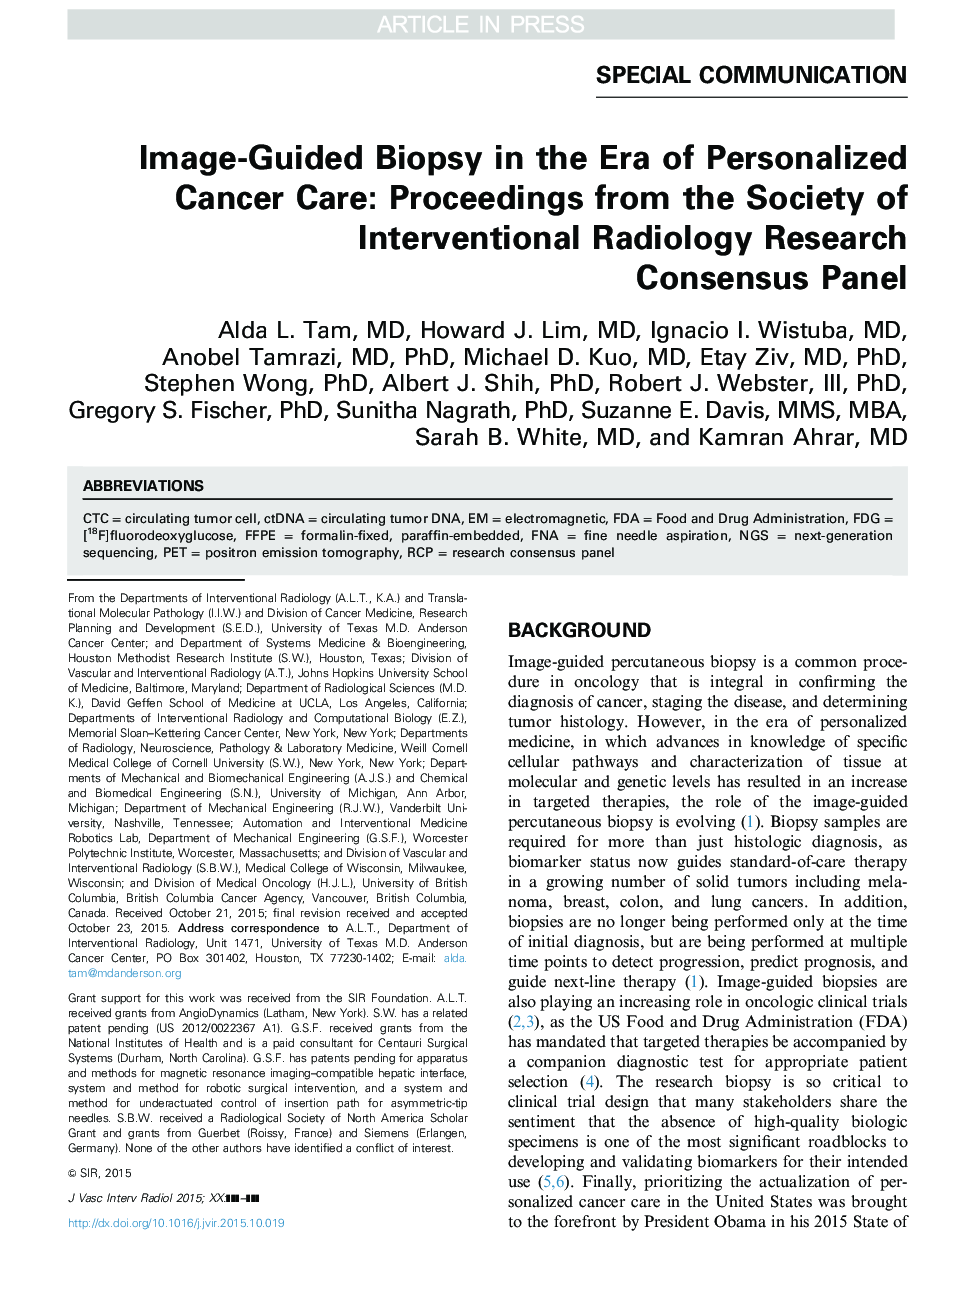 بیوپسی تصویری هدایت شده در دوران مراقبت های سرطانی فردی: مقالاتی از انجمن تحقیقات مداخله ای رادیولوژی پژوهشی 